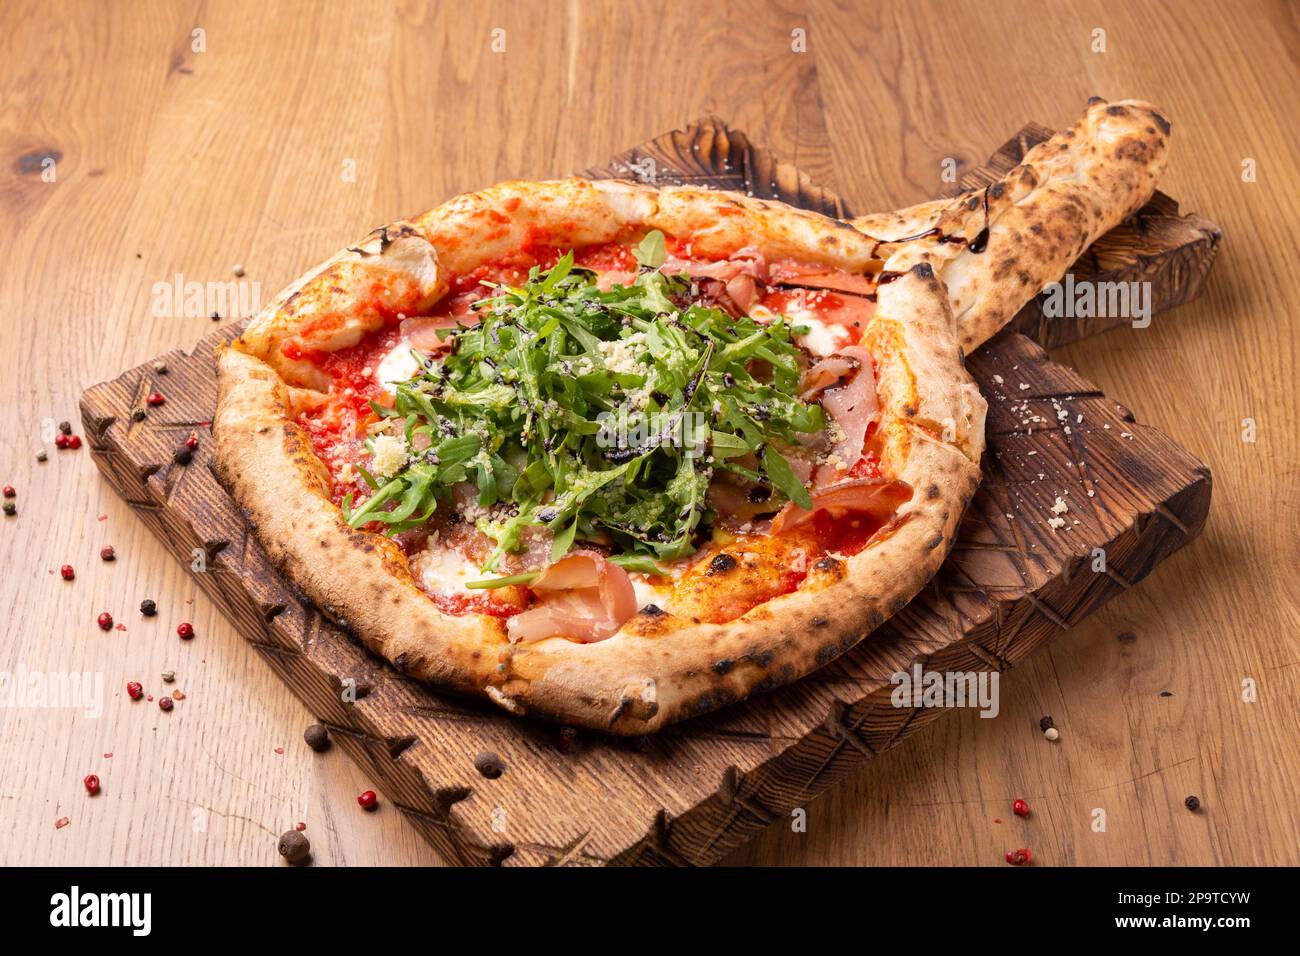 Pizza al forno con mozzarella, prosciutto secco, pomodori, aceto balsamico e rucola su fondo ligneo. Vista ravvicinata Foto Stock